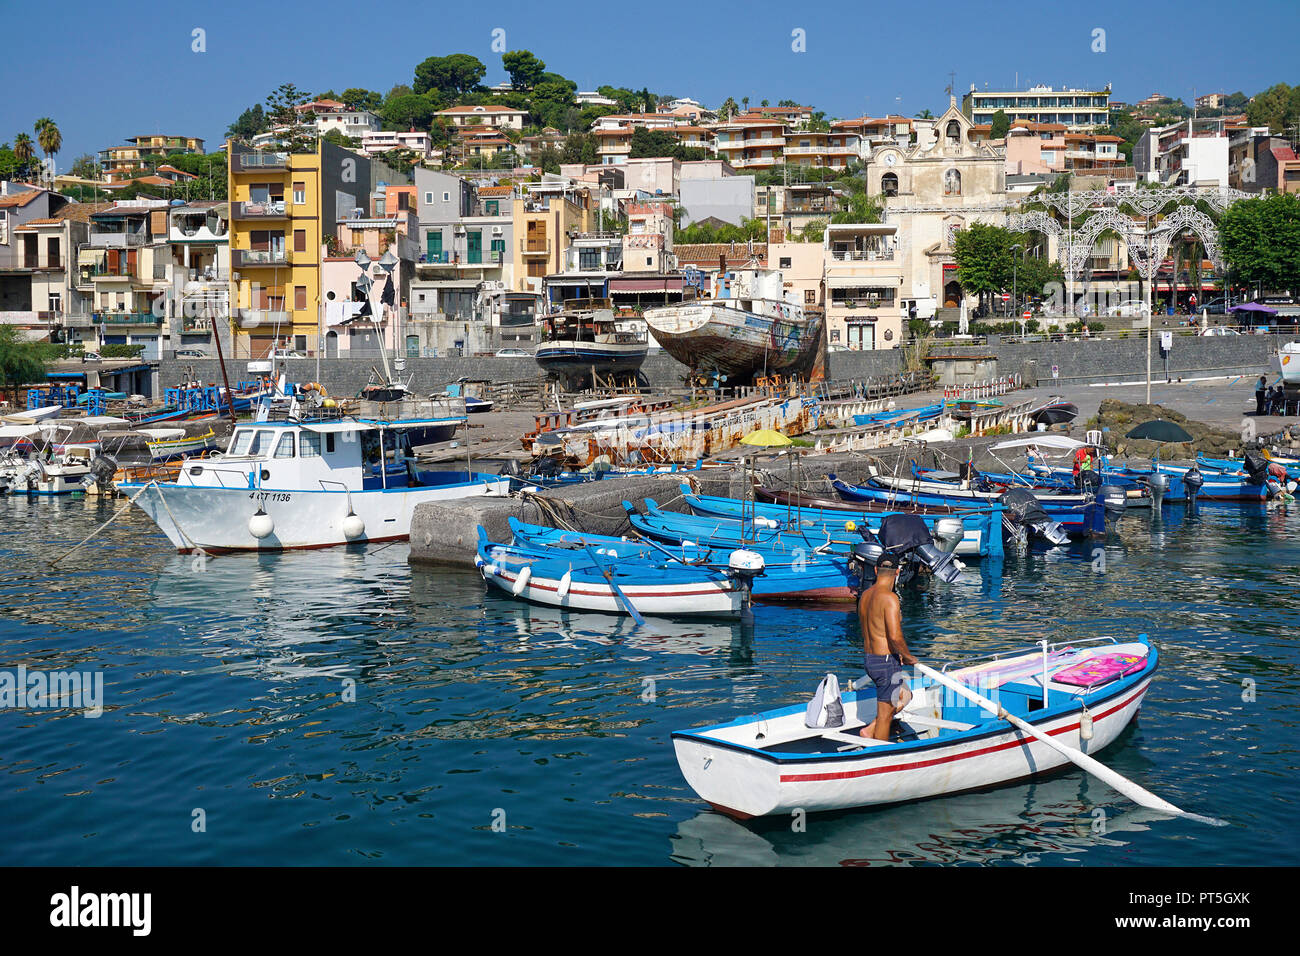 Pescatore con canotto a porto del villaggio di pescatori di Aci Trezza, comune di Aci Castello, Catania, Sicilia, Italia Foto Stock